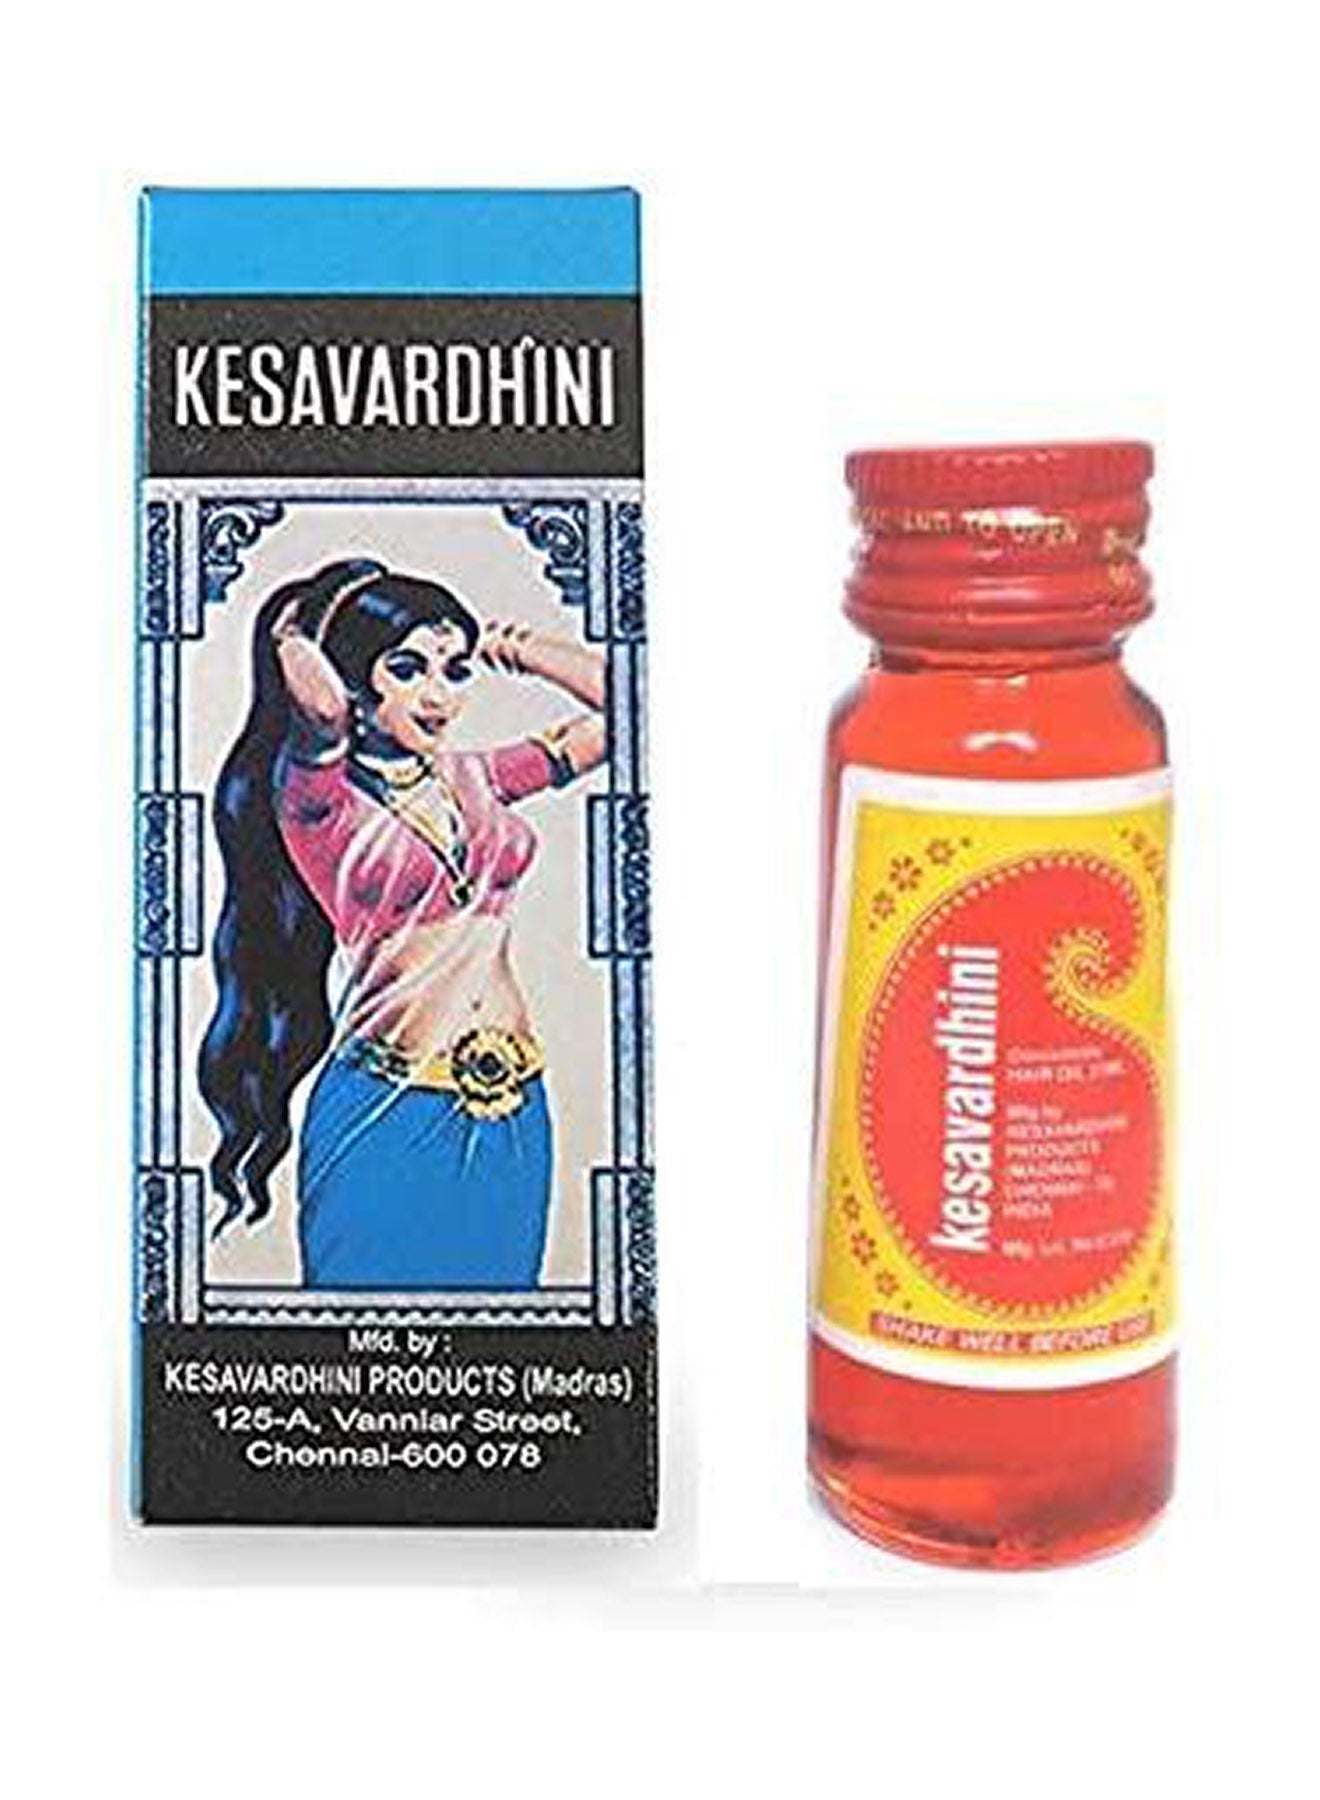 Kesavardhini Hair Oil For Healthy Hair  25 ml Value Pack of 12 